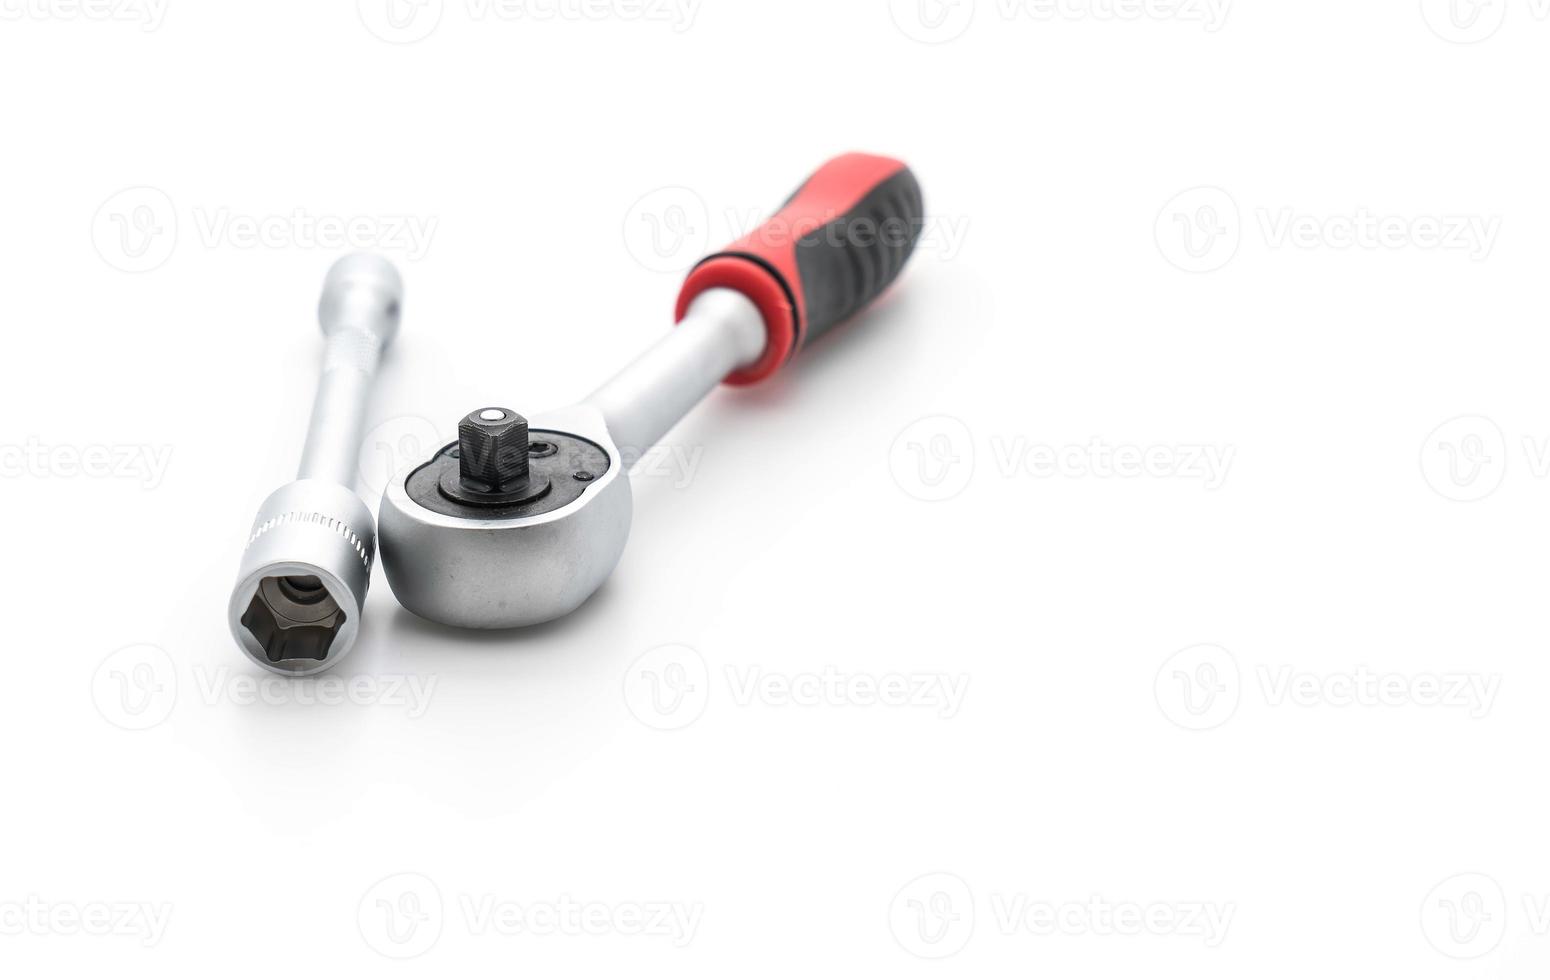 Socket wrench on white background photo